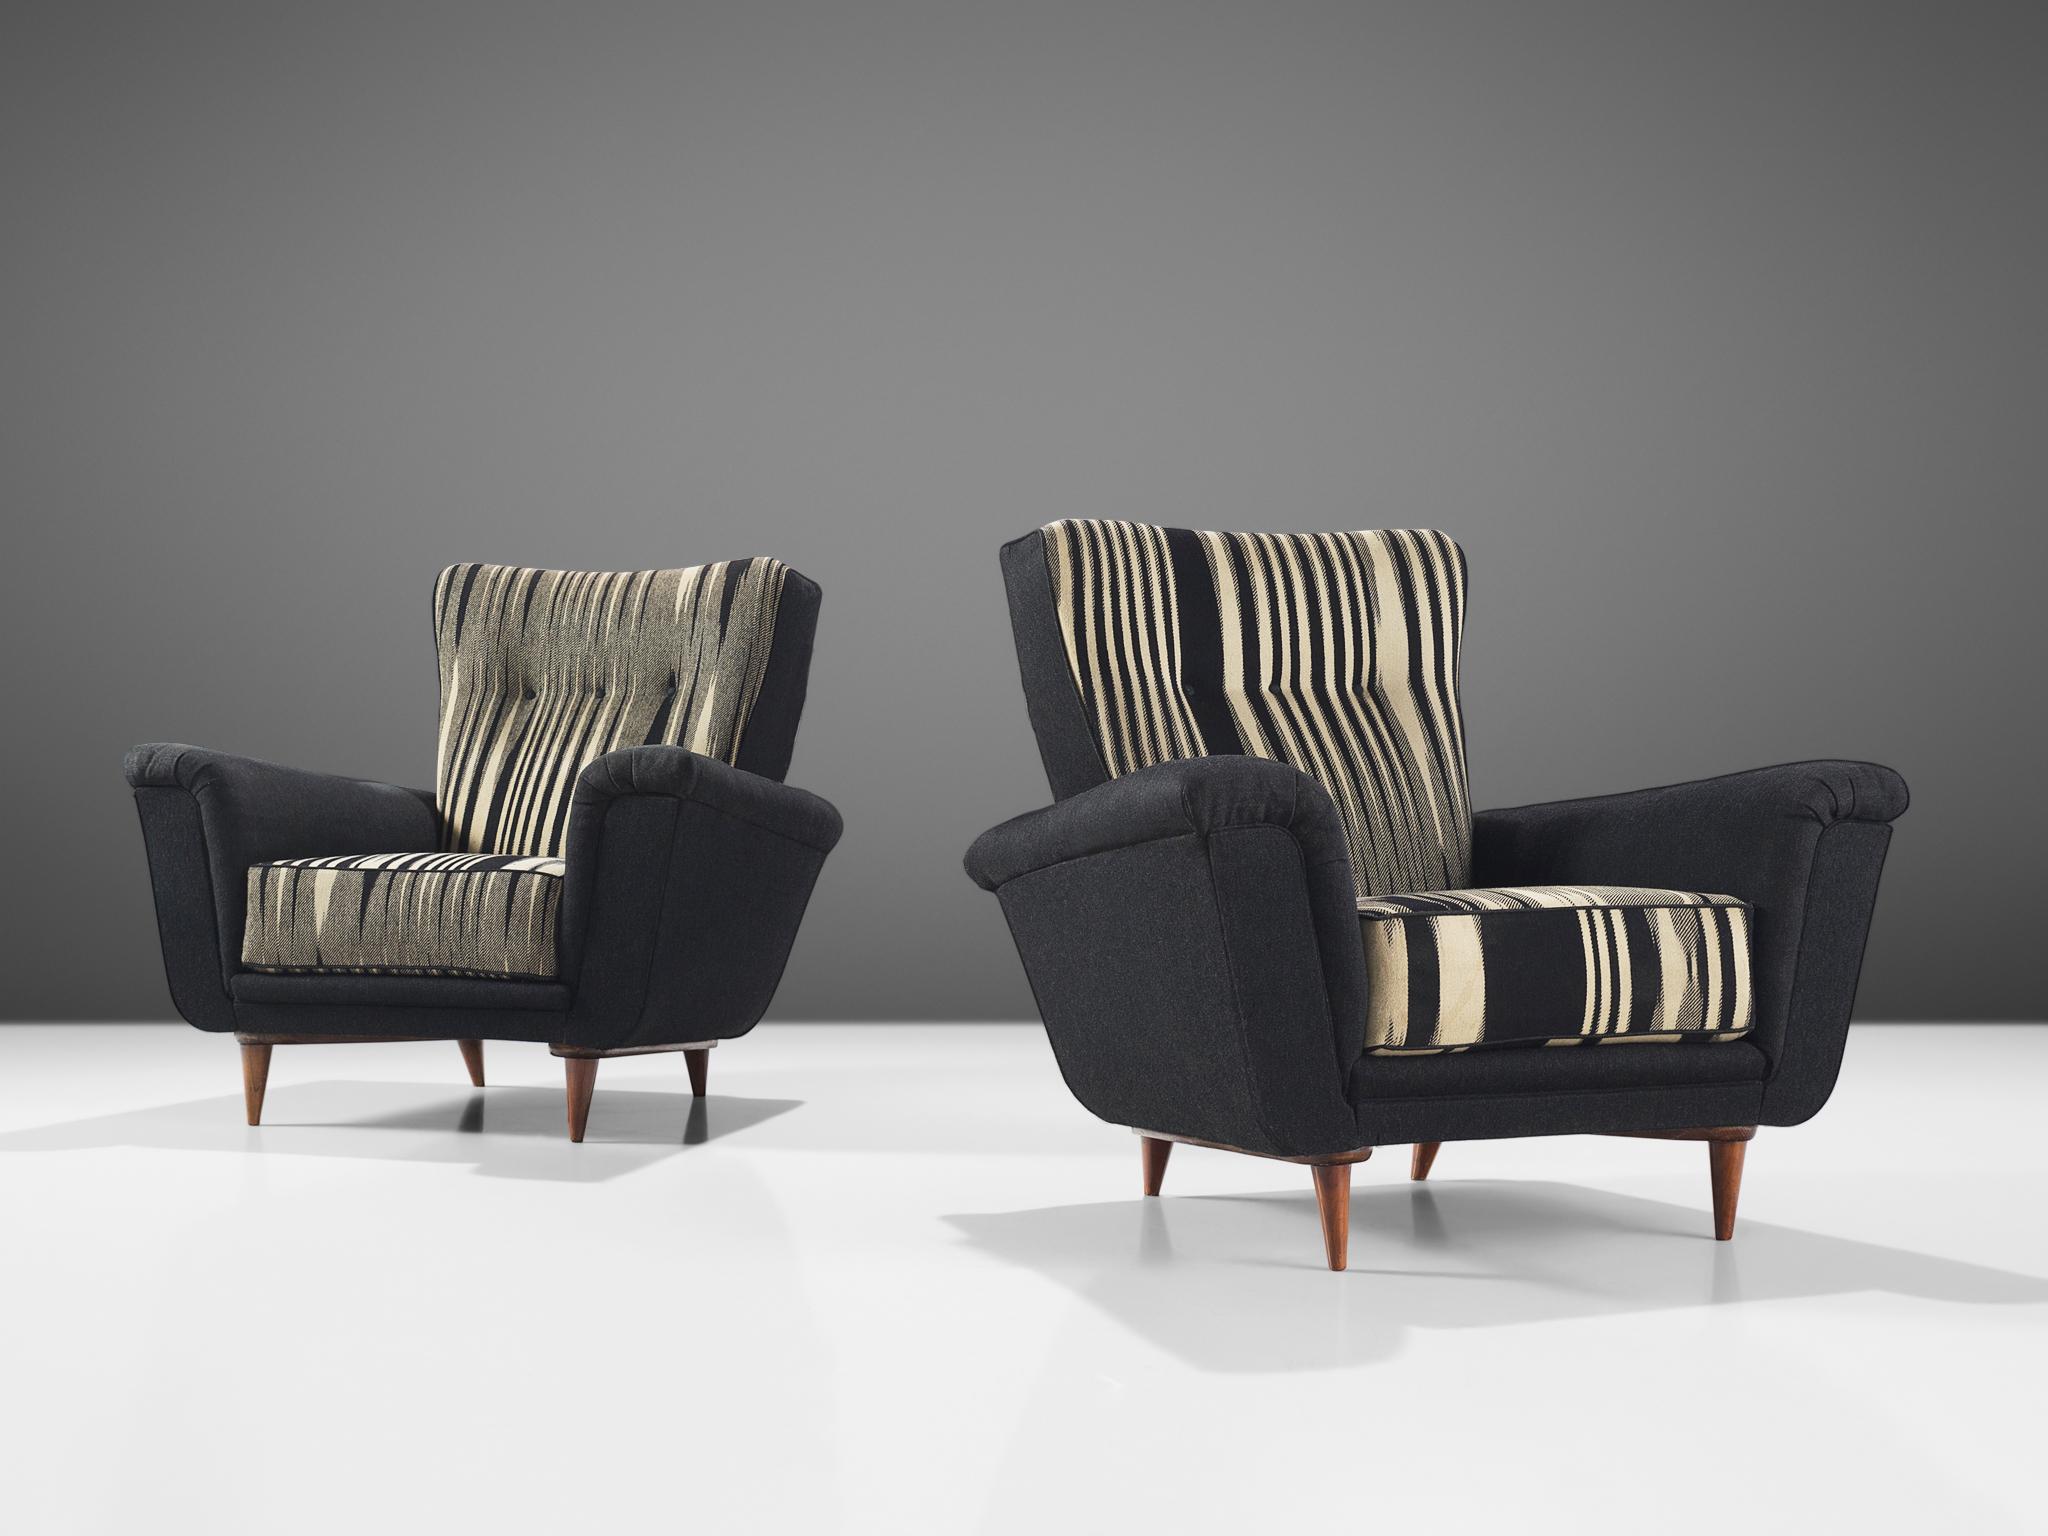 Theo Ruth pour Artifort, paire de fauteuils, en tissu noir et blanc d'origine, bois, Pays-Bas, années 1950.

Ce fauteuil est un exemple emblématique d'un meuble Artifort conçu par Theo Ruth dans les années 1950. La chaise longue est d'une part